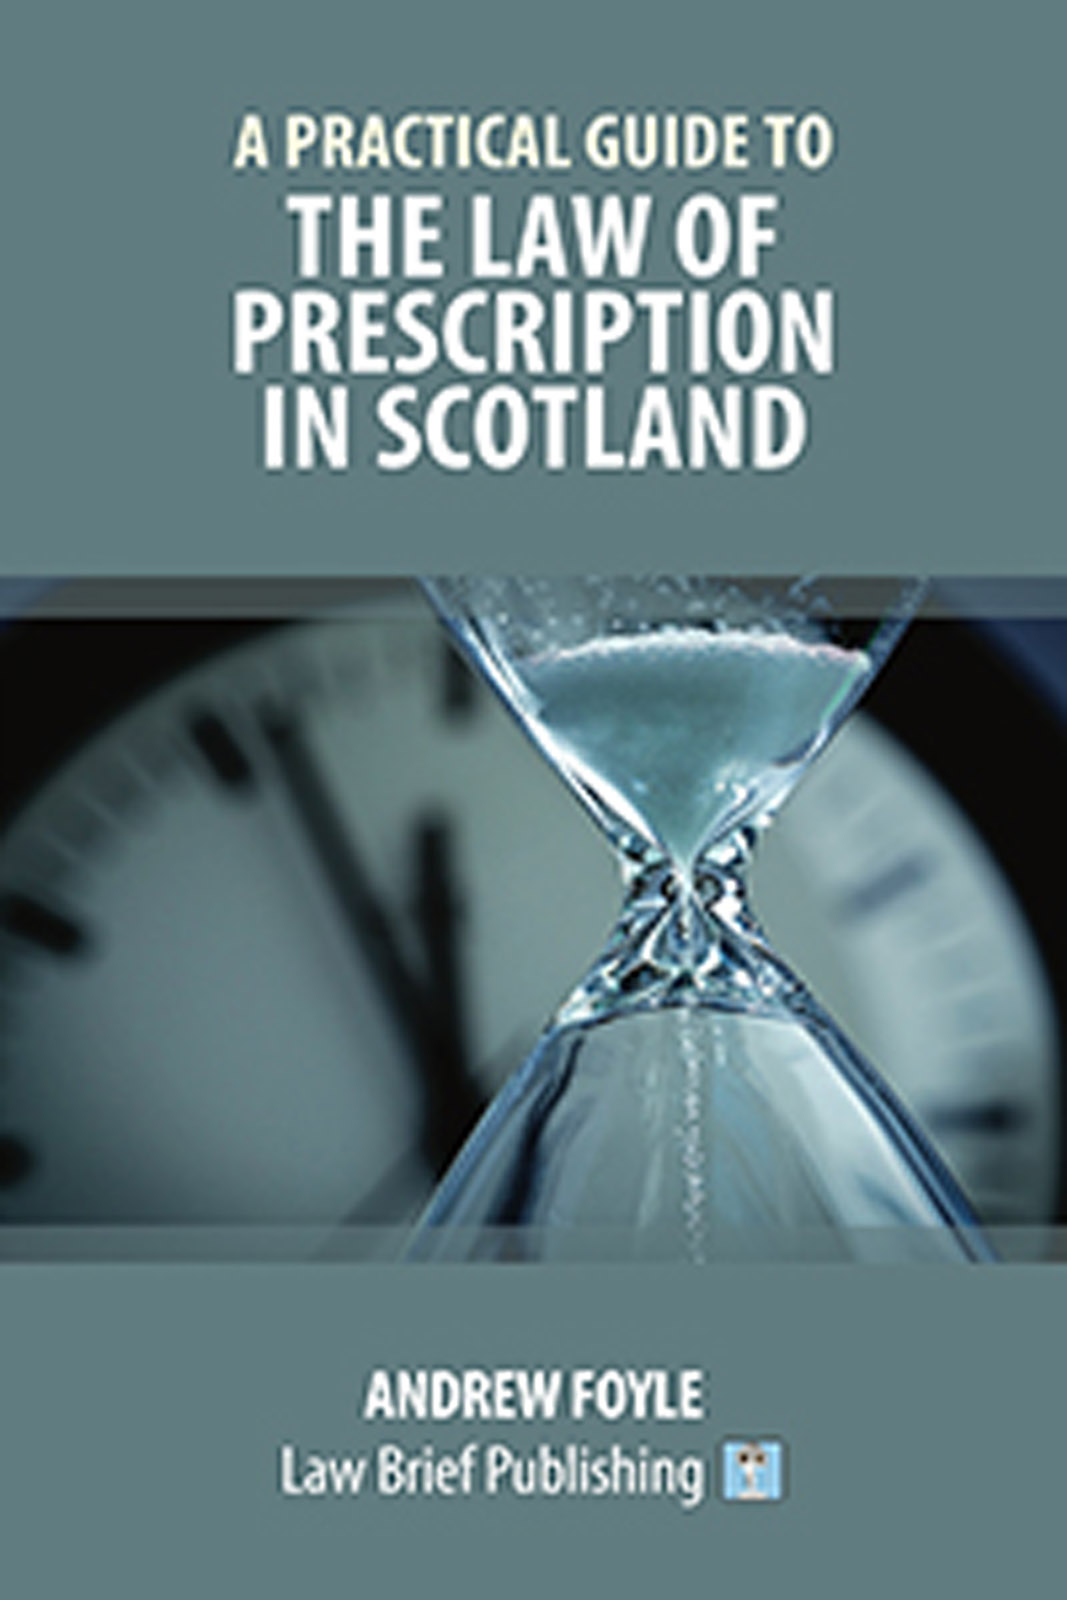 The law of prescription in Scotland